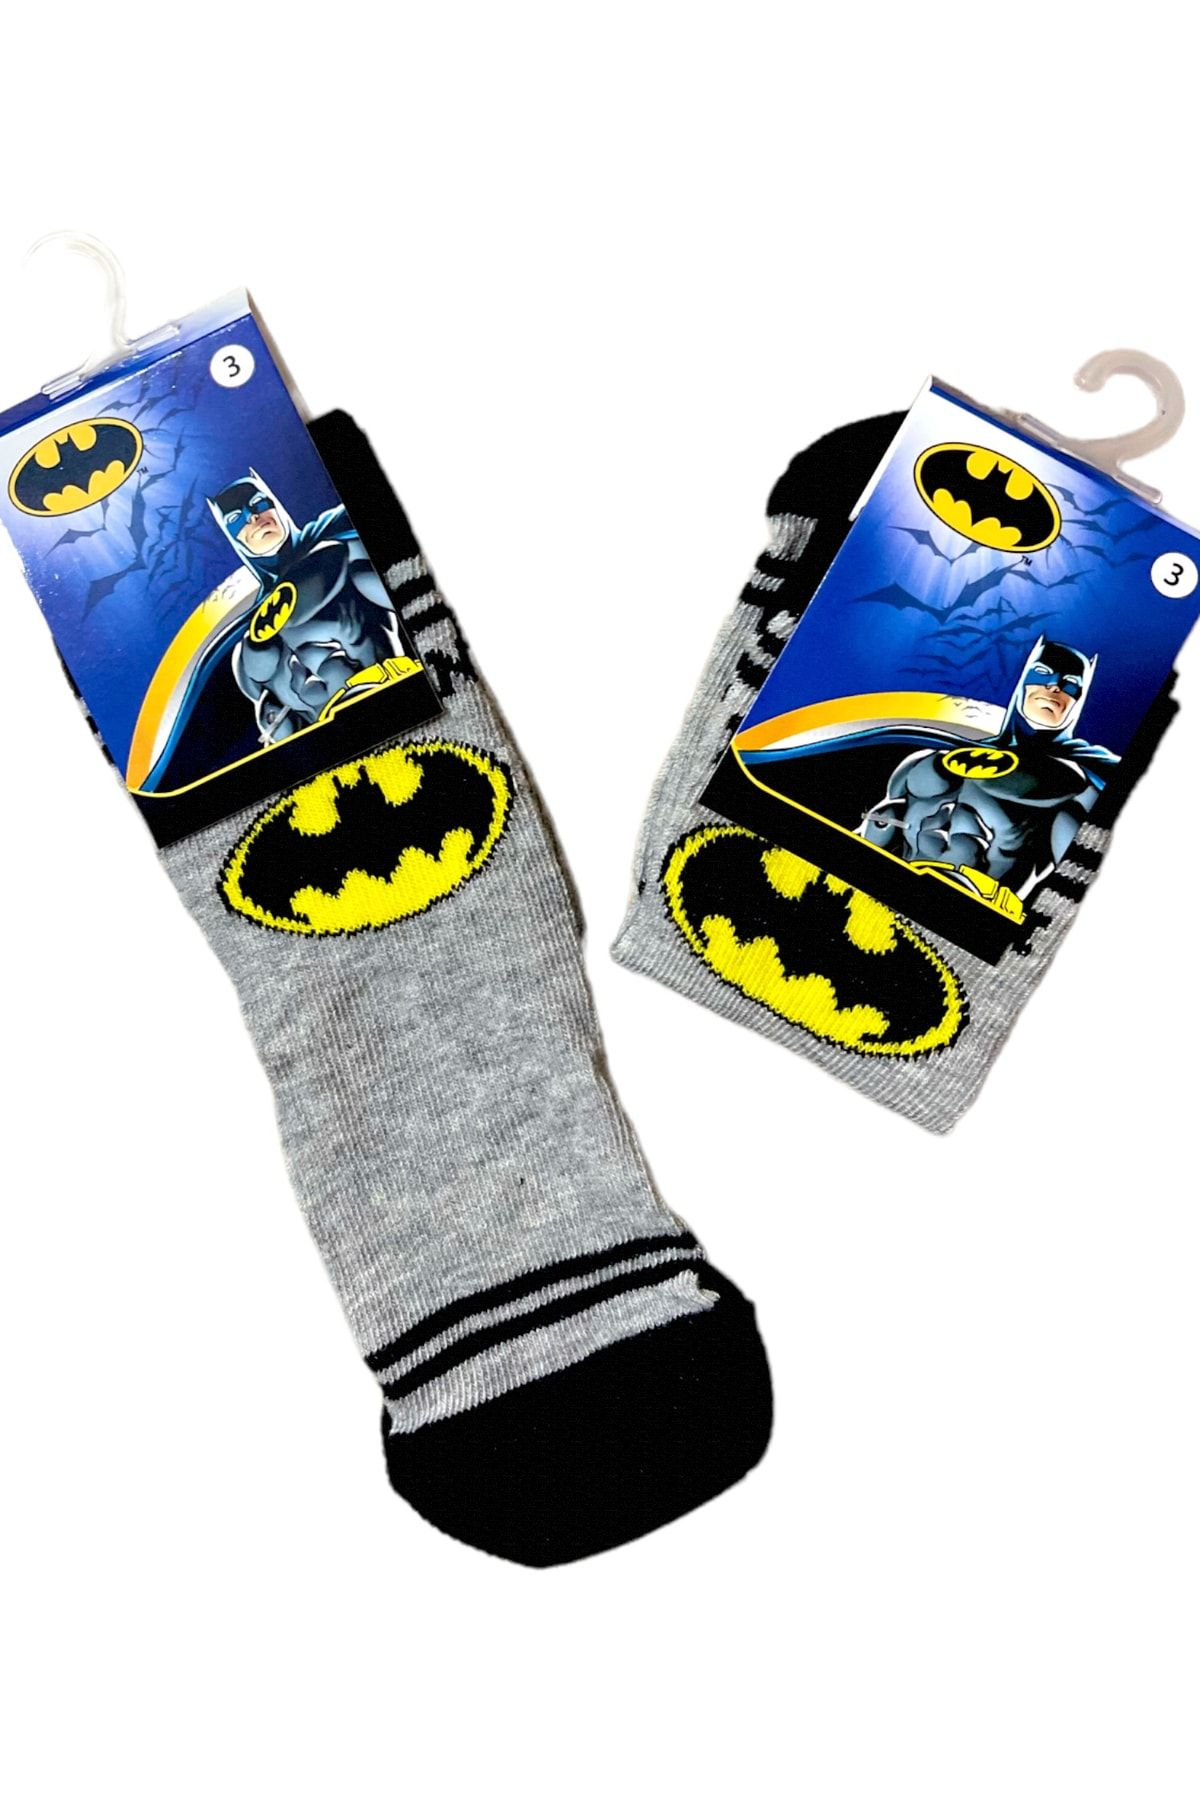 Lolliboomkids Erkek Bebek Çocuk Batman Desen Nakış Detaylı Pamuklu Bebe Soket Çorap Tek Adet 3/4 Yaş 24 Numara